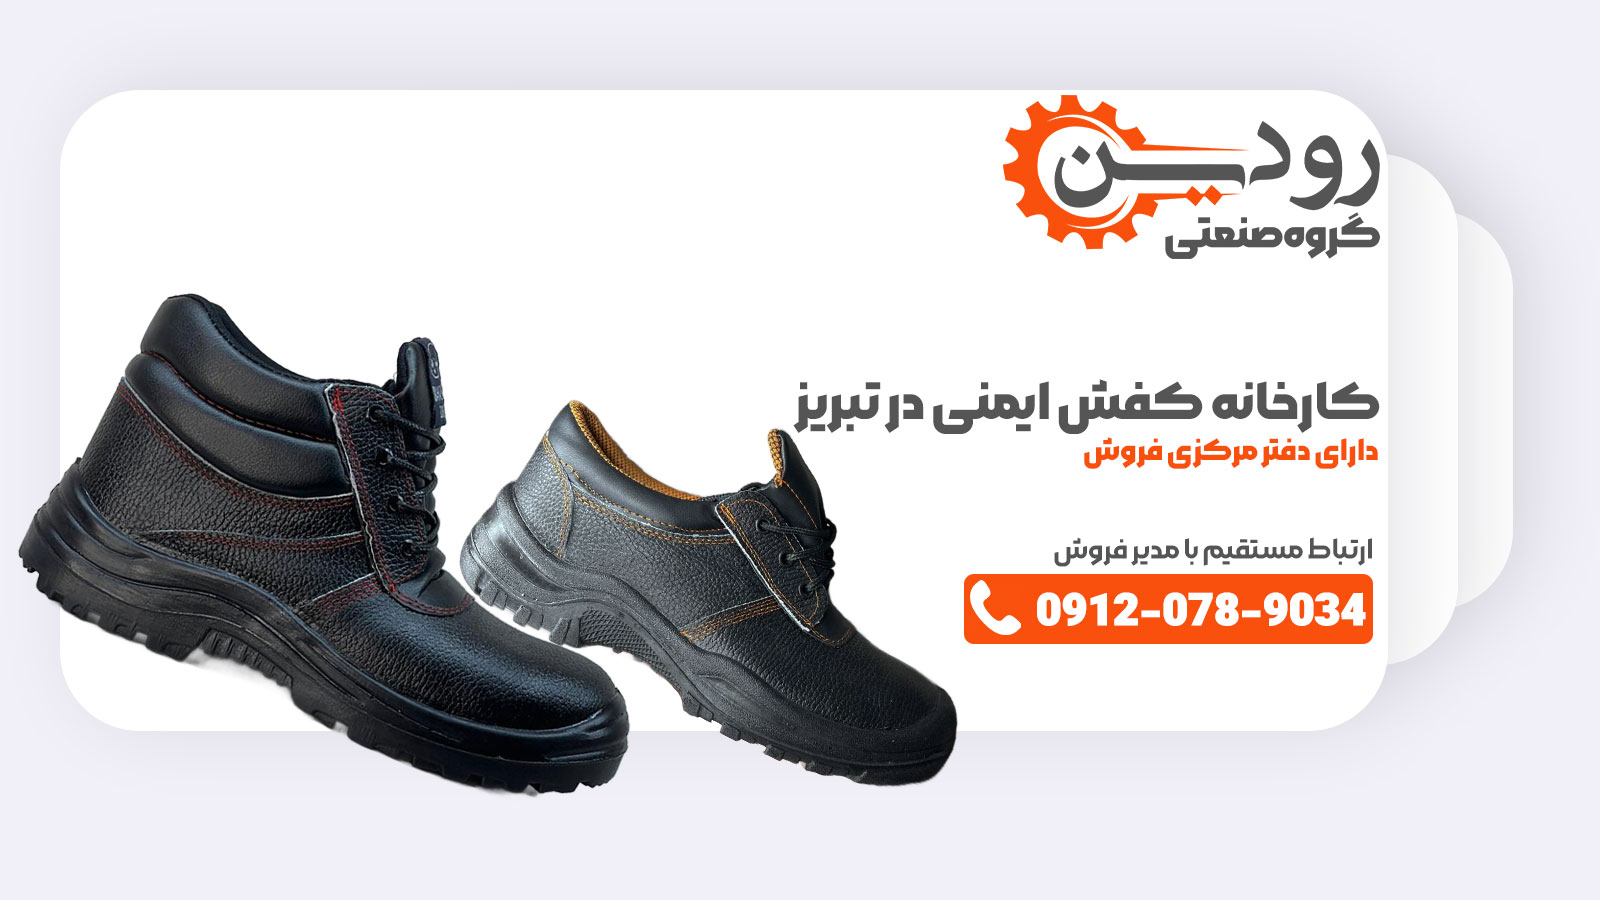 کارخانه تولید کفش ایمنی در تبریز سعی می کند قیمت کفش ایمنی را به صورت ارزان به مشتریان عرضه کند.